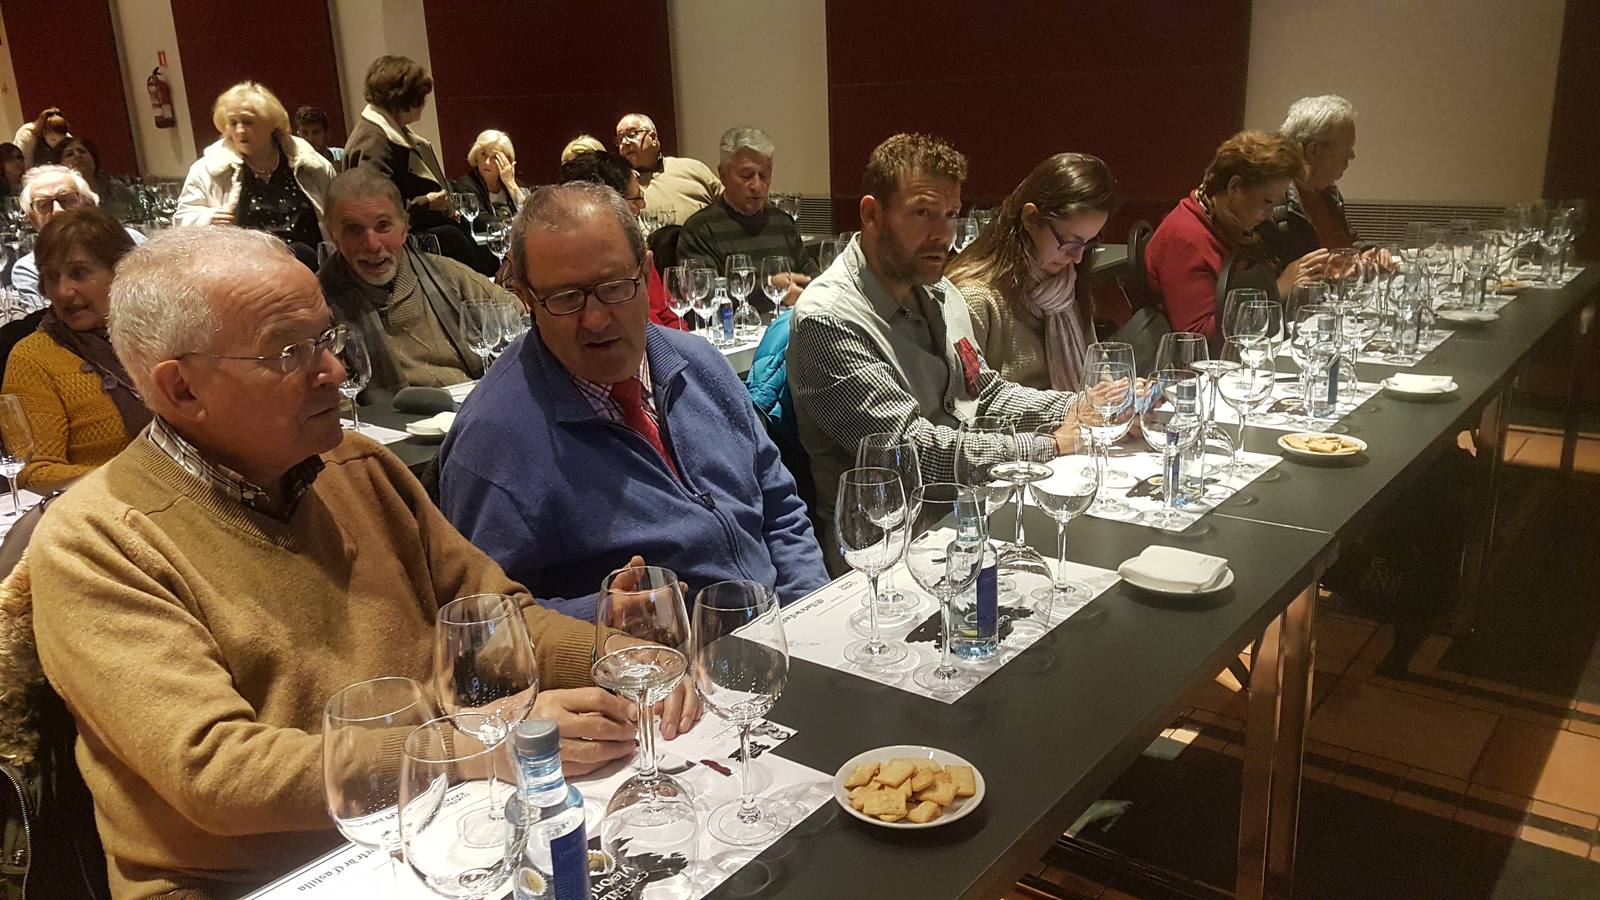 Cata de vinos Cuatro Rayas organizada por El Norte de Castilla